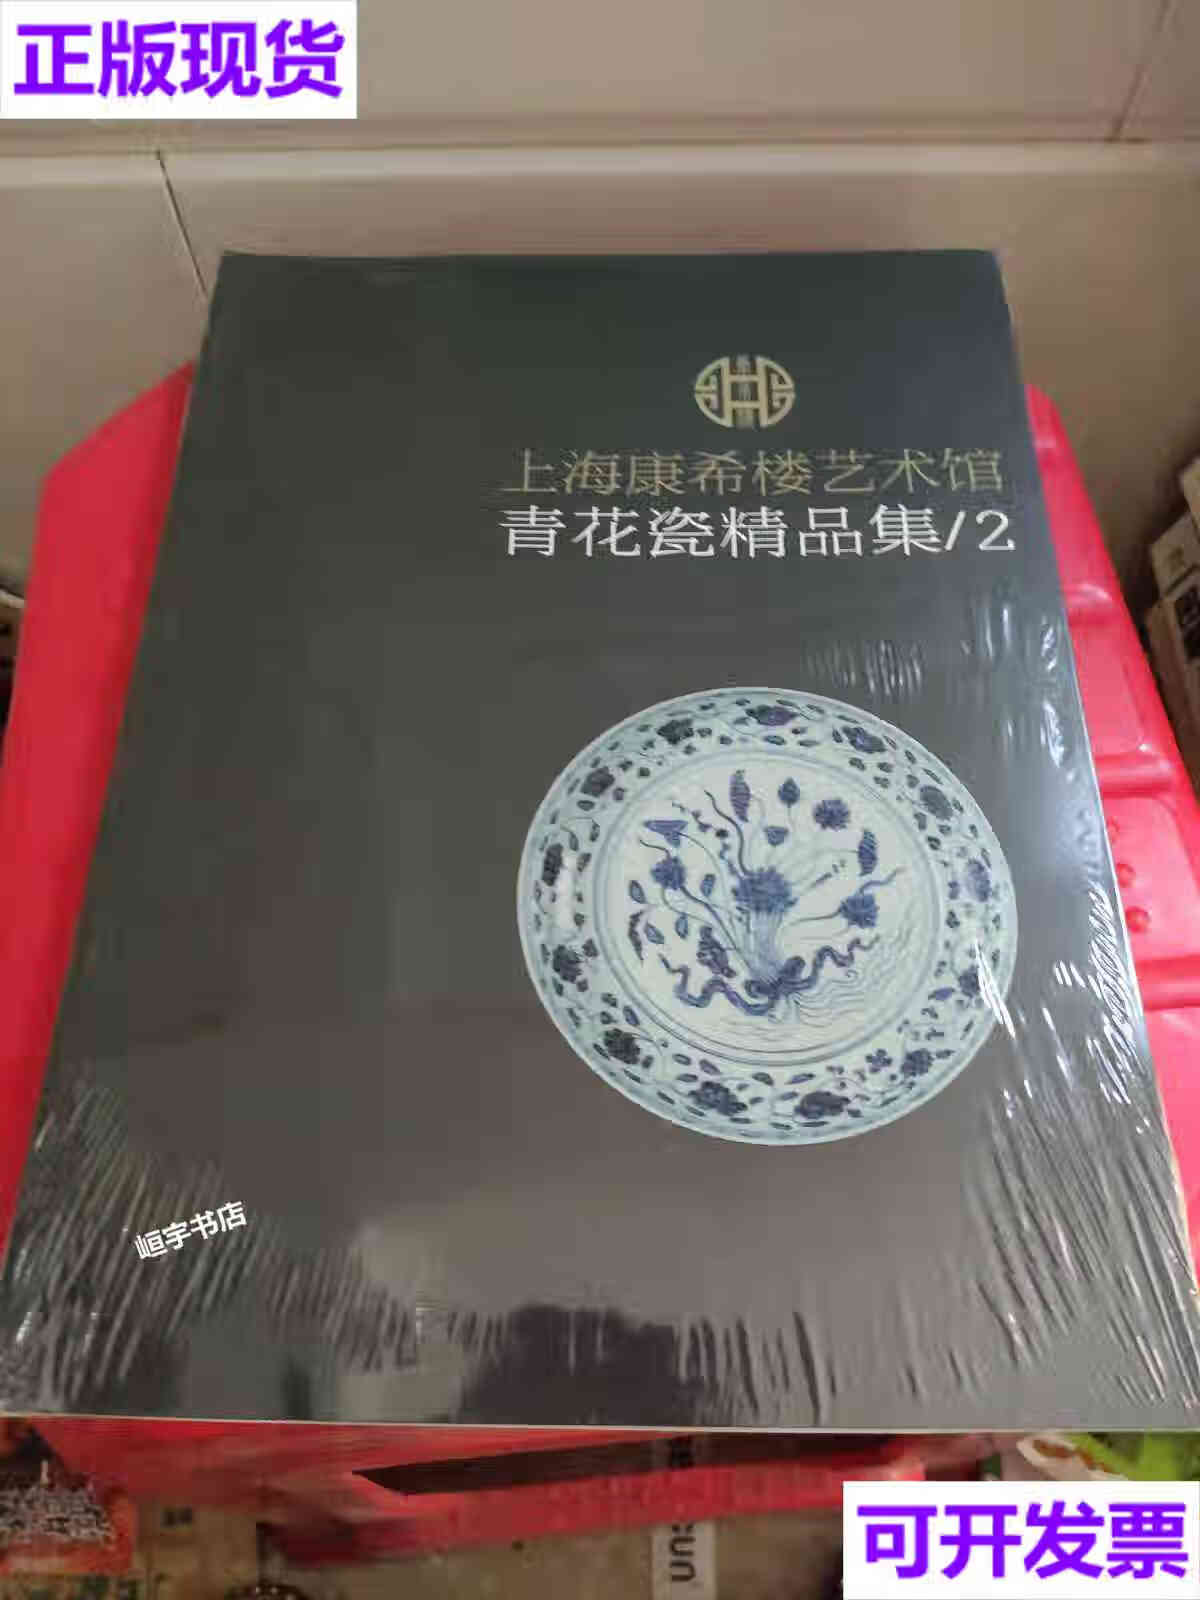 【二手9成新】上海康希楼艺术馆青花瓷精品集2 请看图